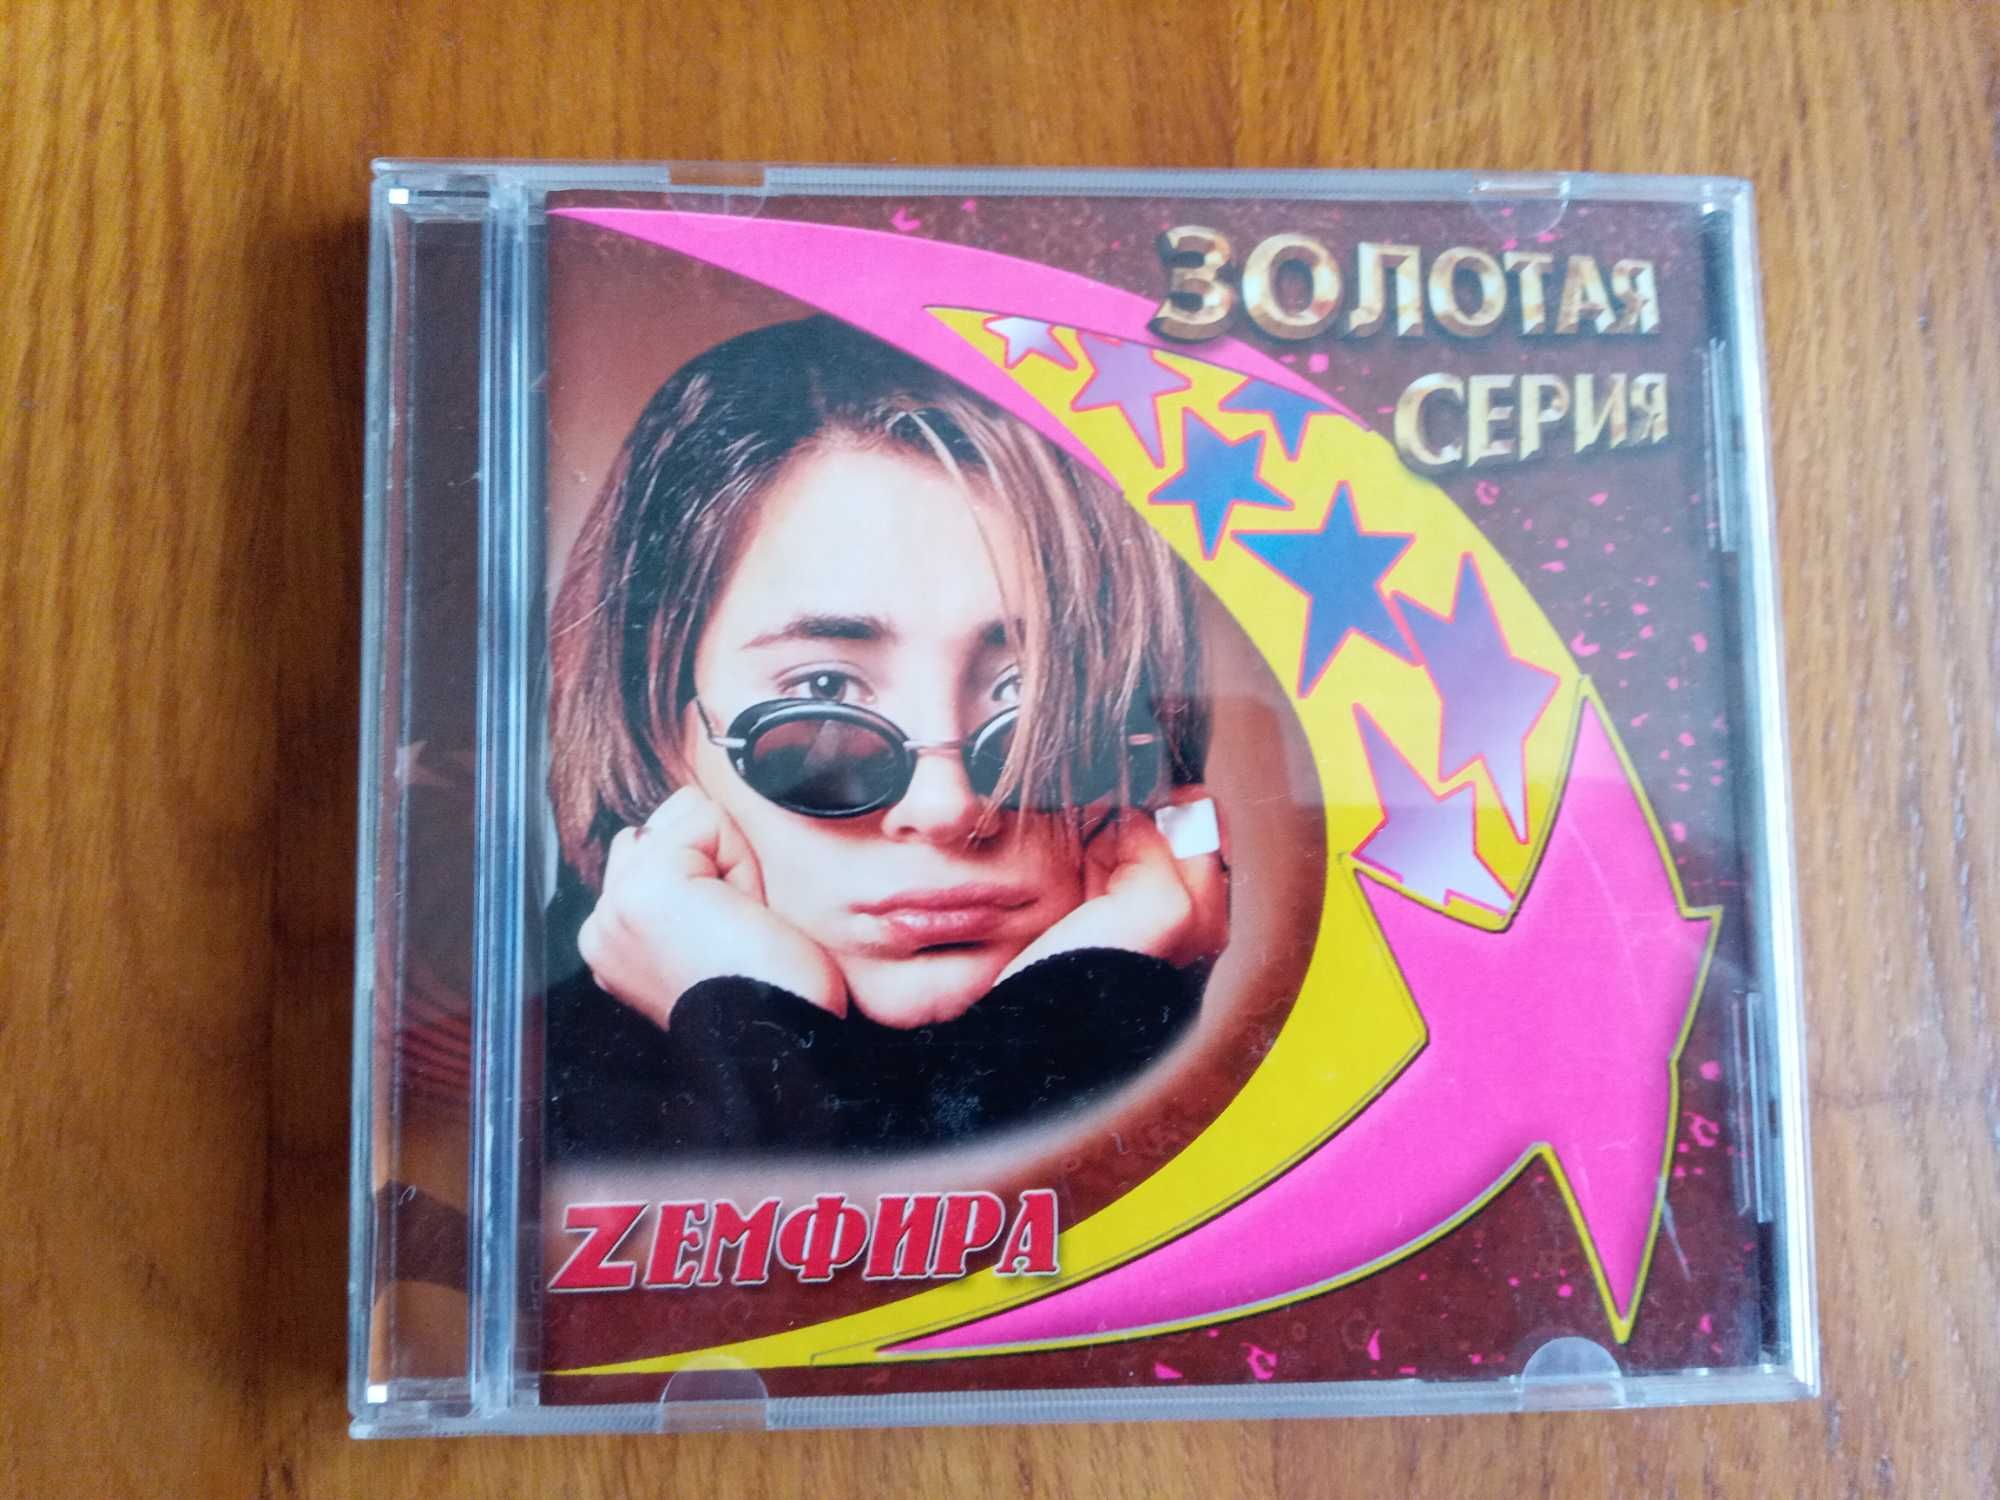 Золотая Серия фирменный CD диск сборник лучших песен Земфира